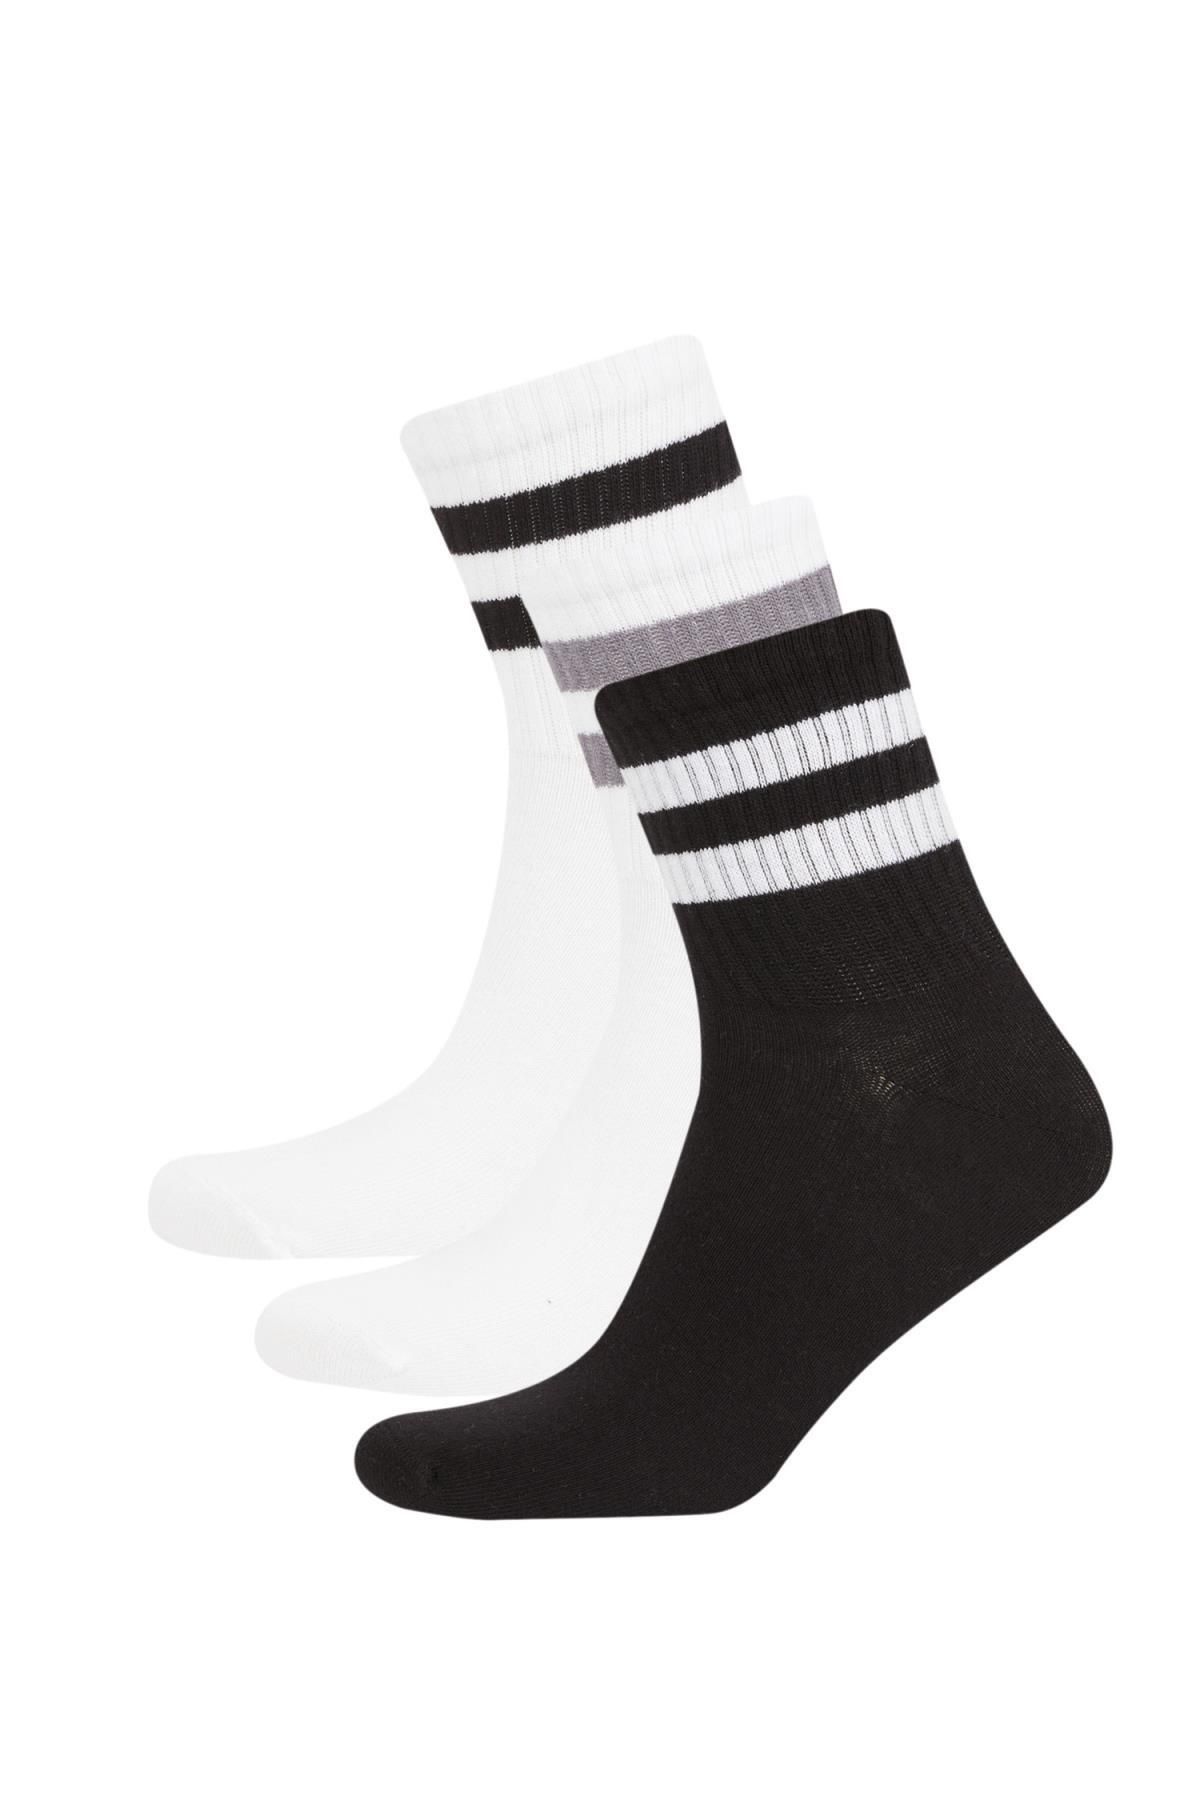 Defacto Erkek 3'lü Pamuklu Soket Çorap C1971axns